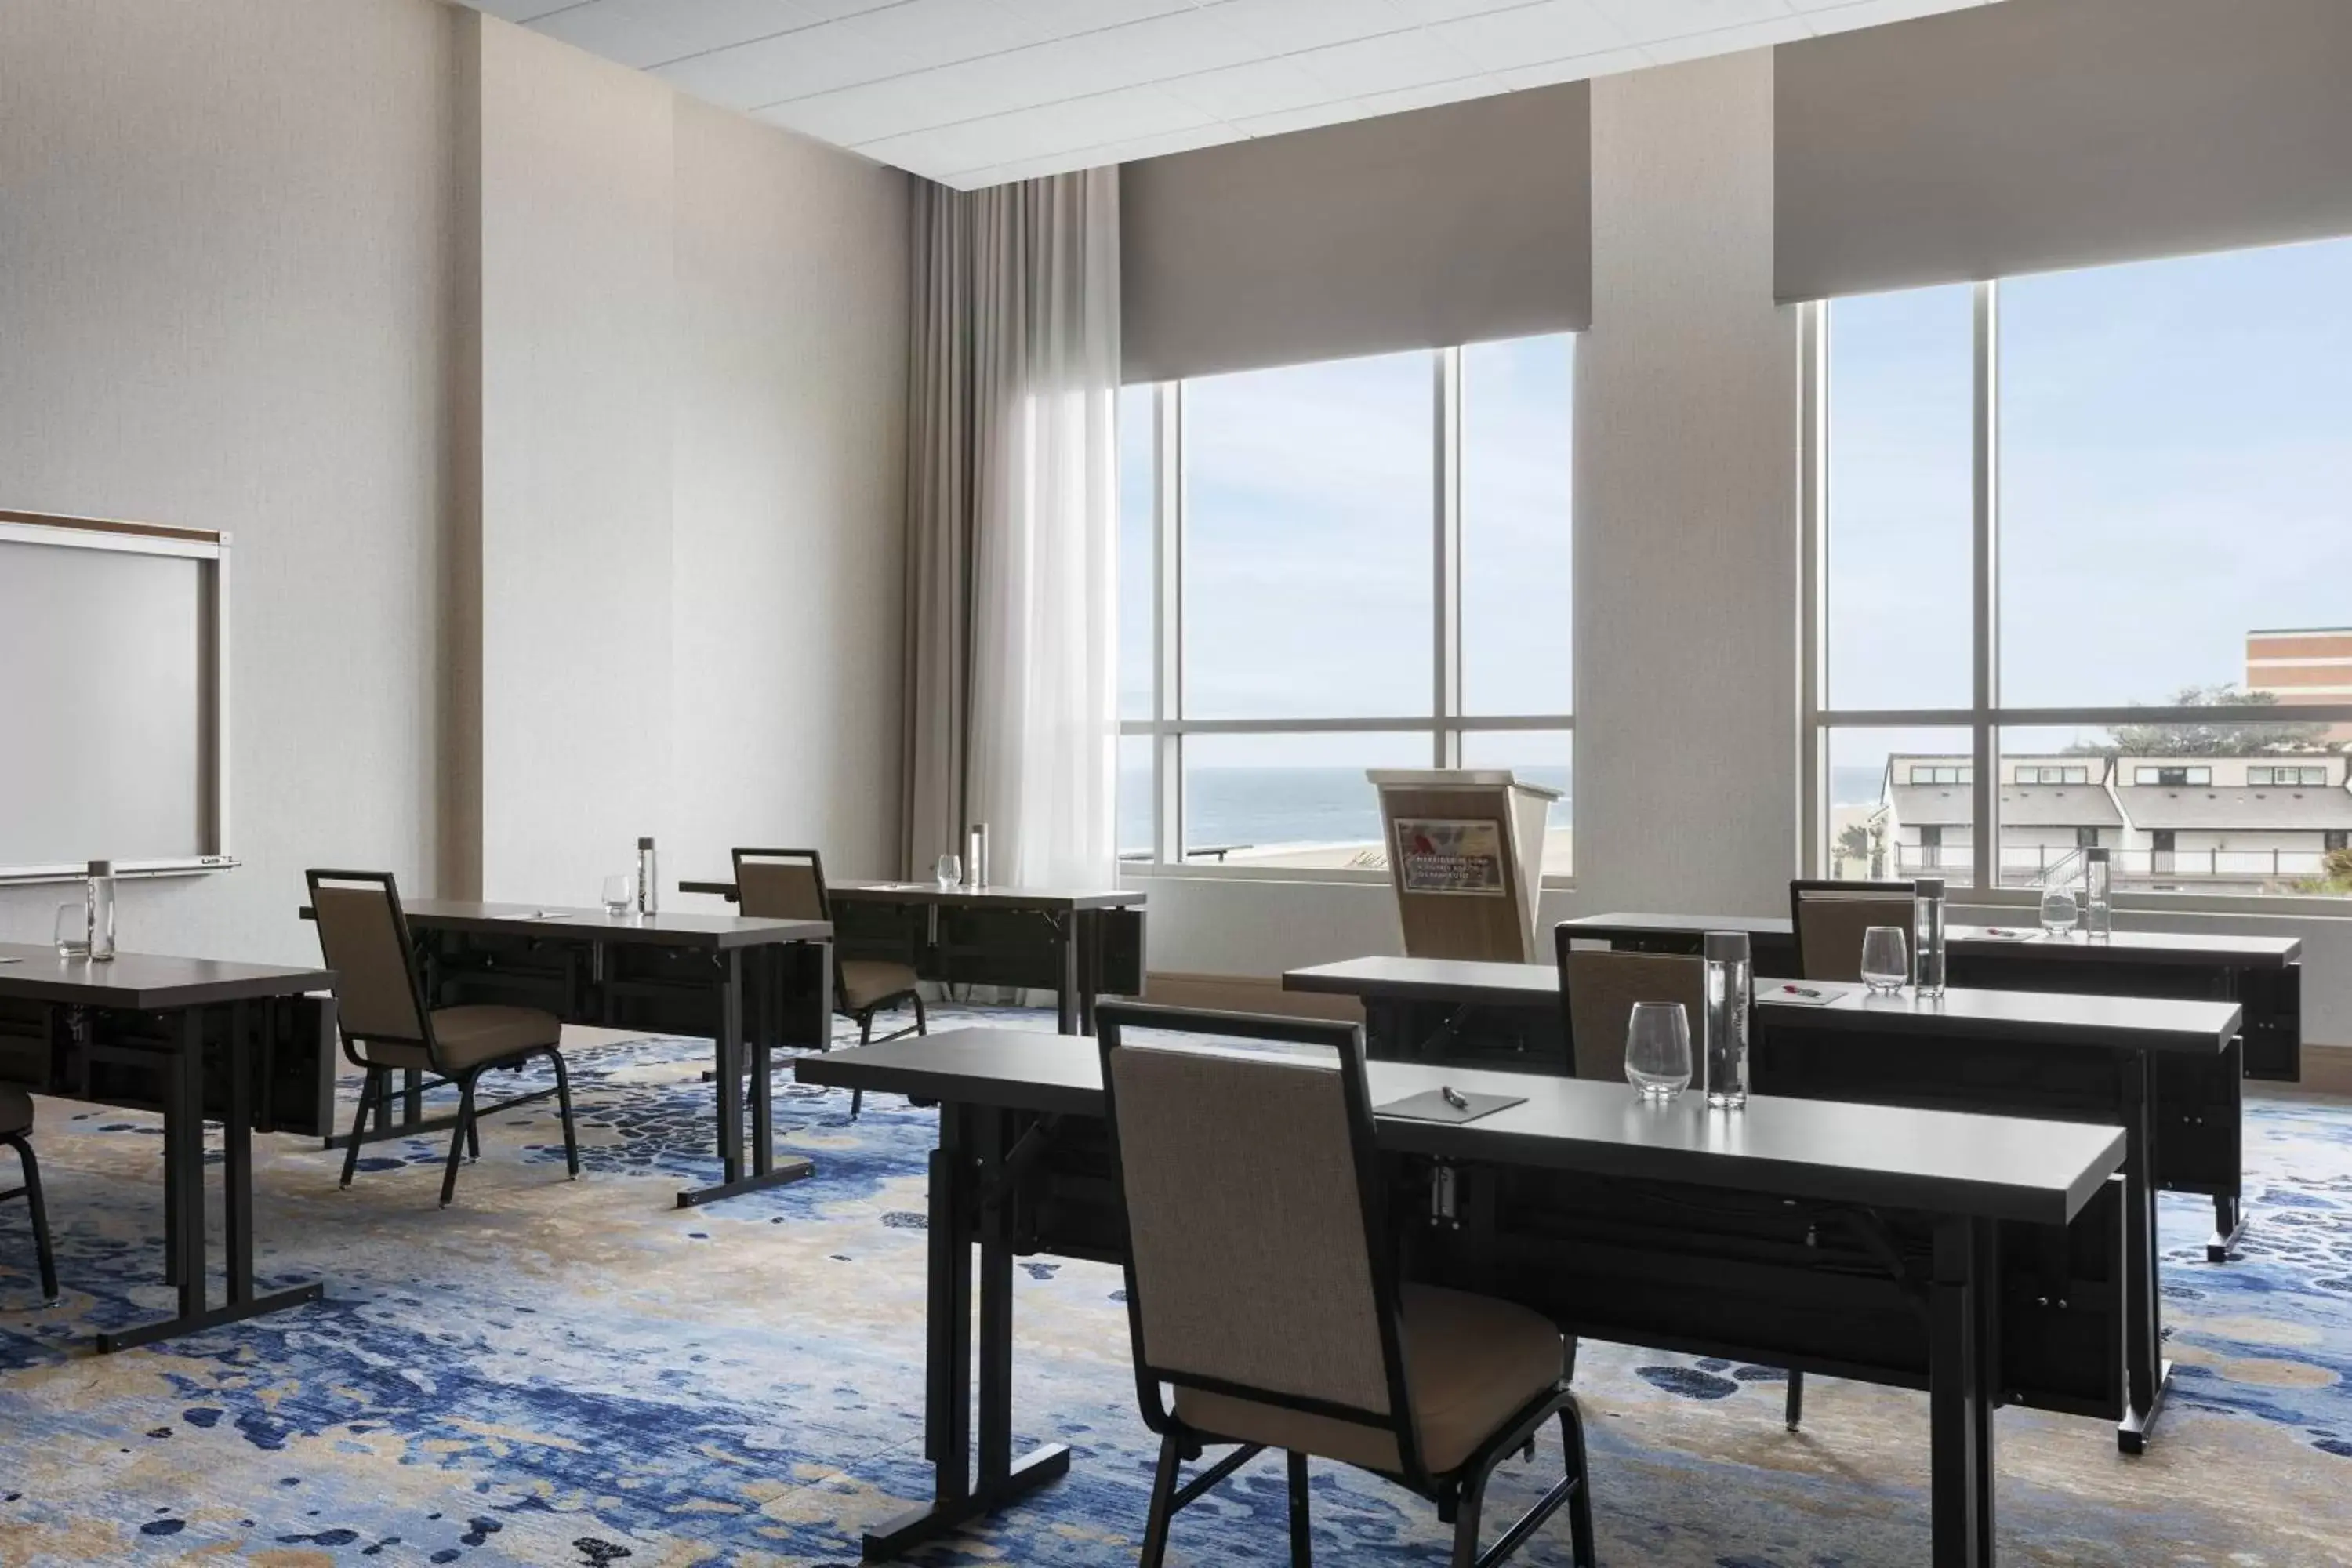 Meeting/conference room in Marriott Virginia Beach Oceanfront Resort